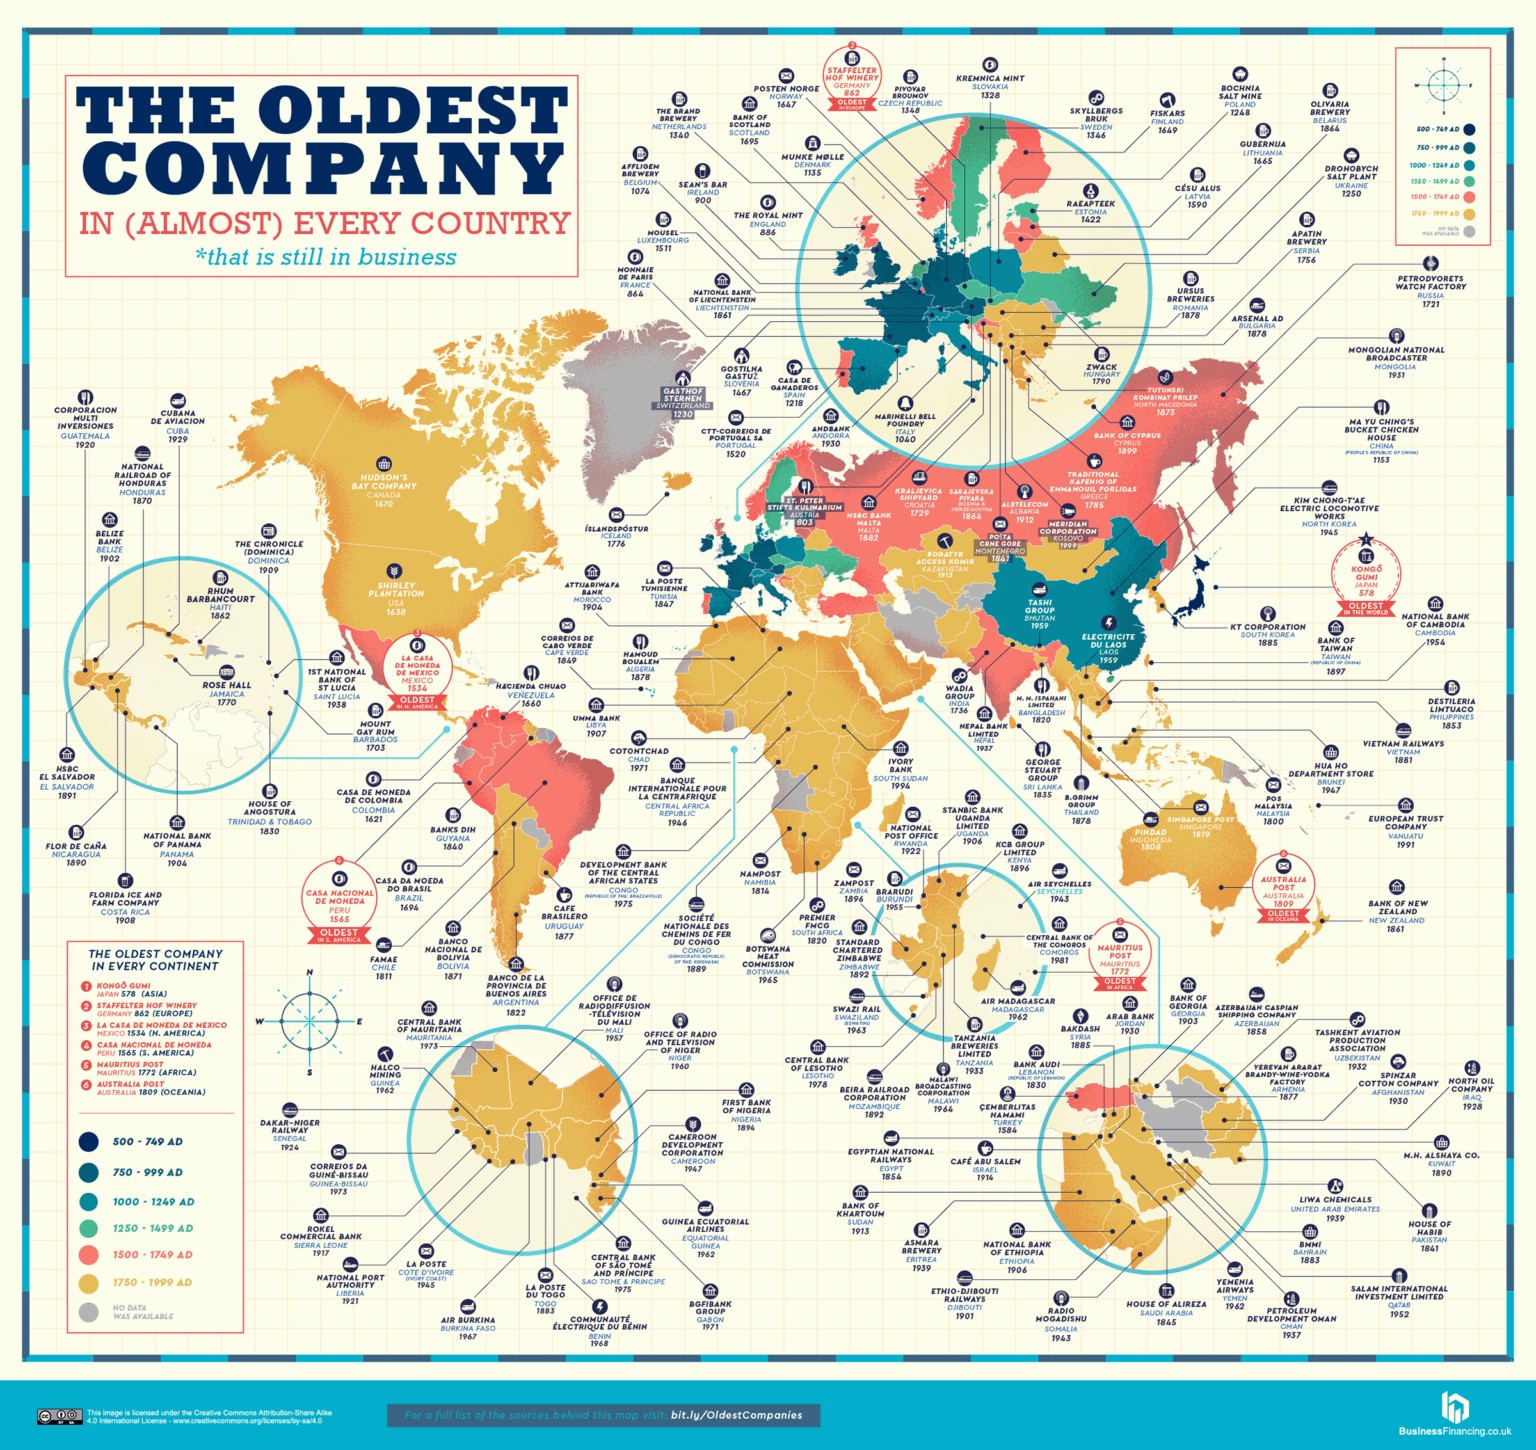 Mapa-mundi das empresas (Foto: Reprodução/Business Insider)